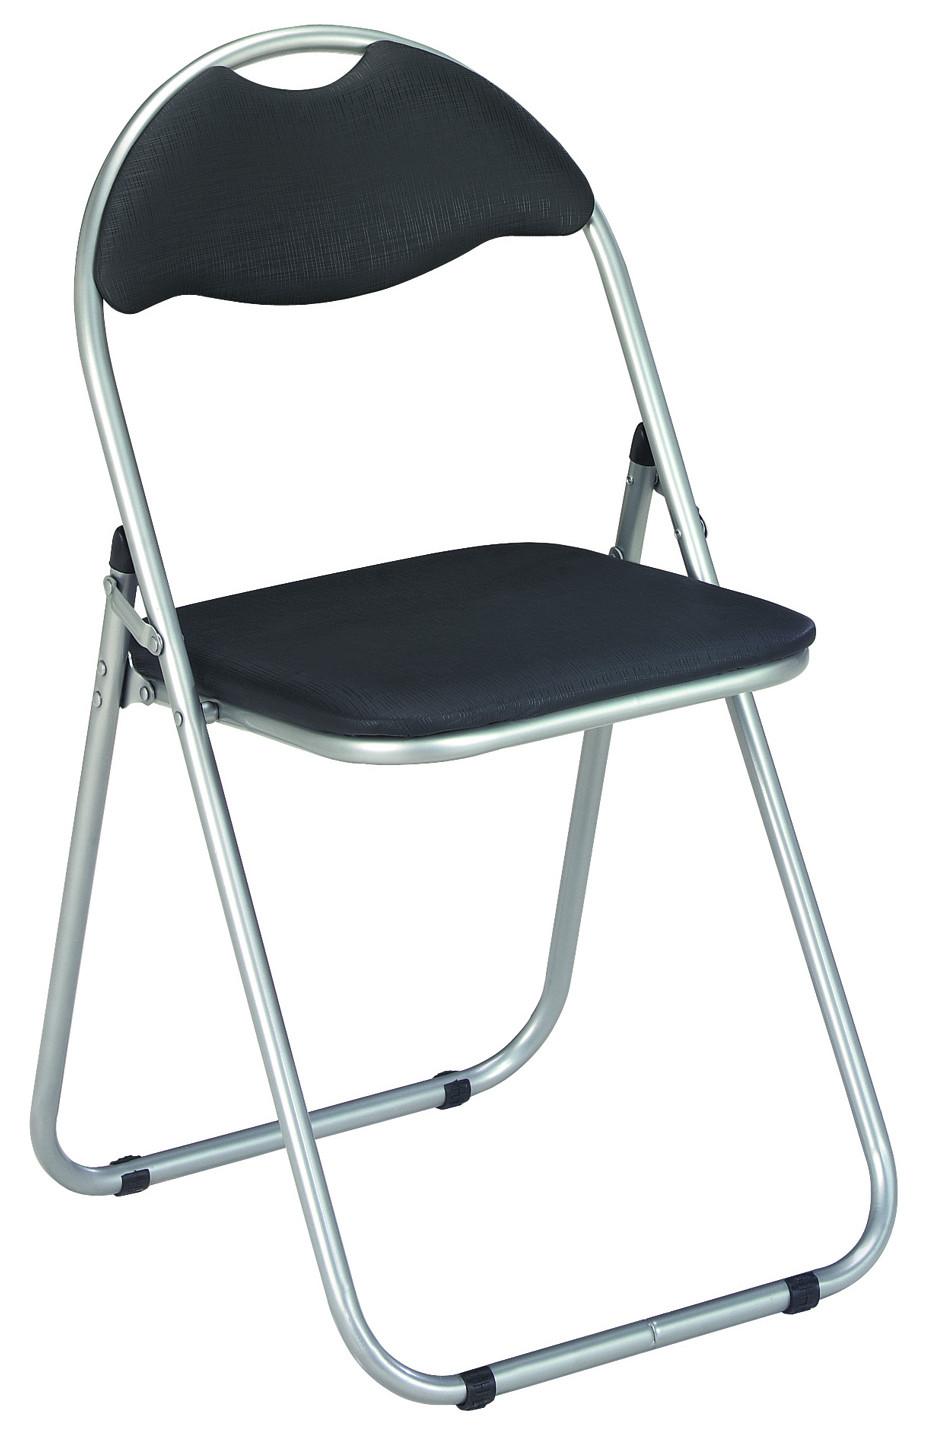 Skládací Židle Shake - černá, Moderní, kov/plast (44/80/47cm)